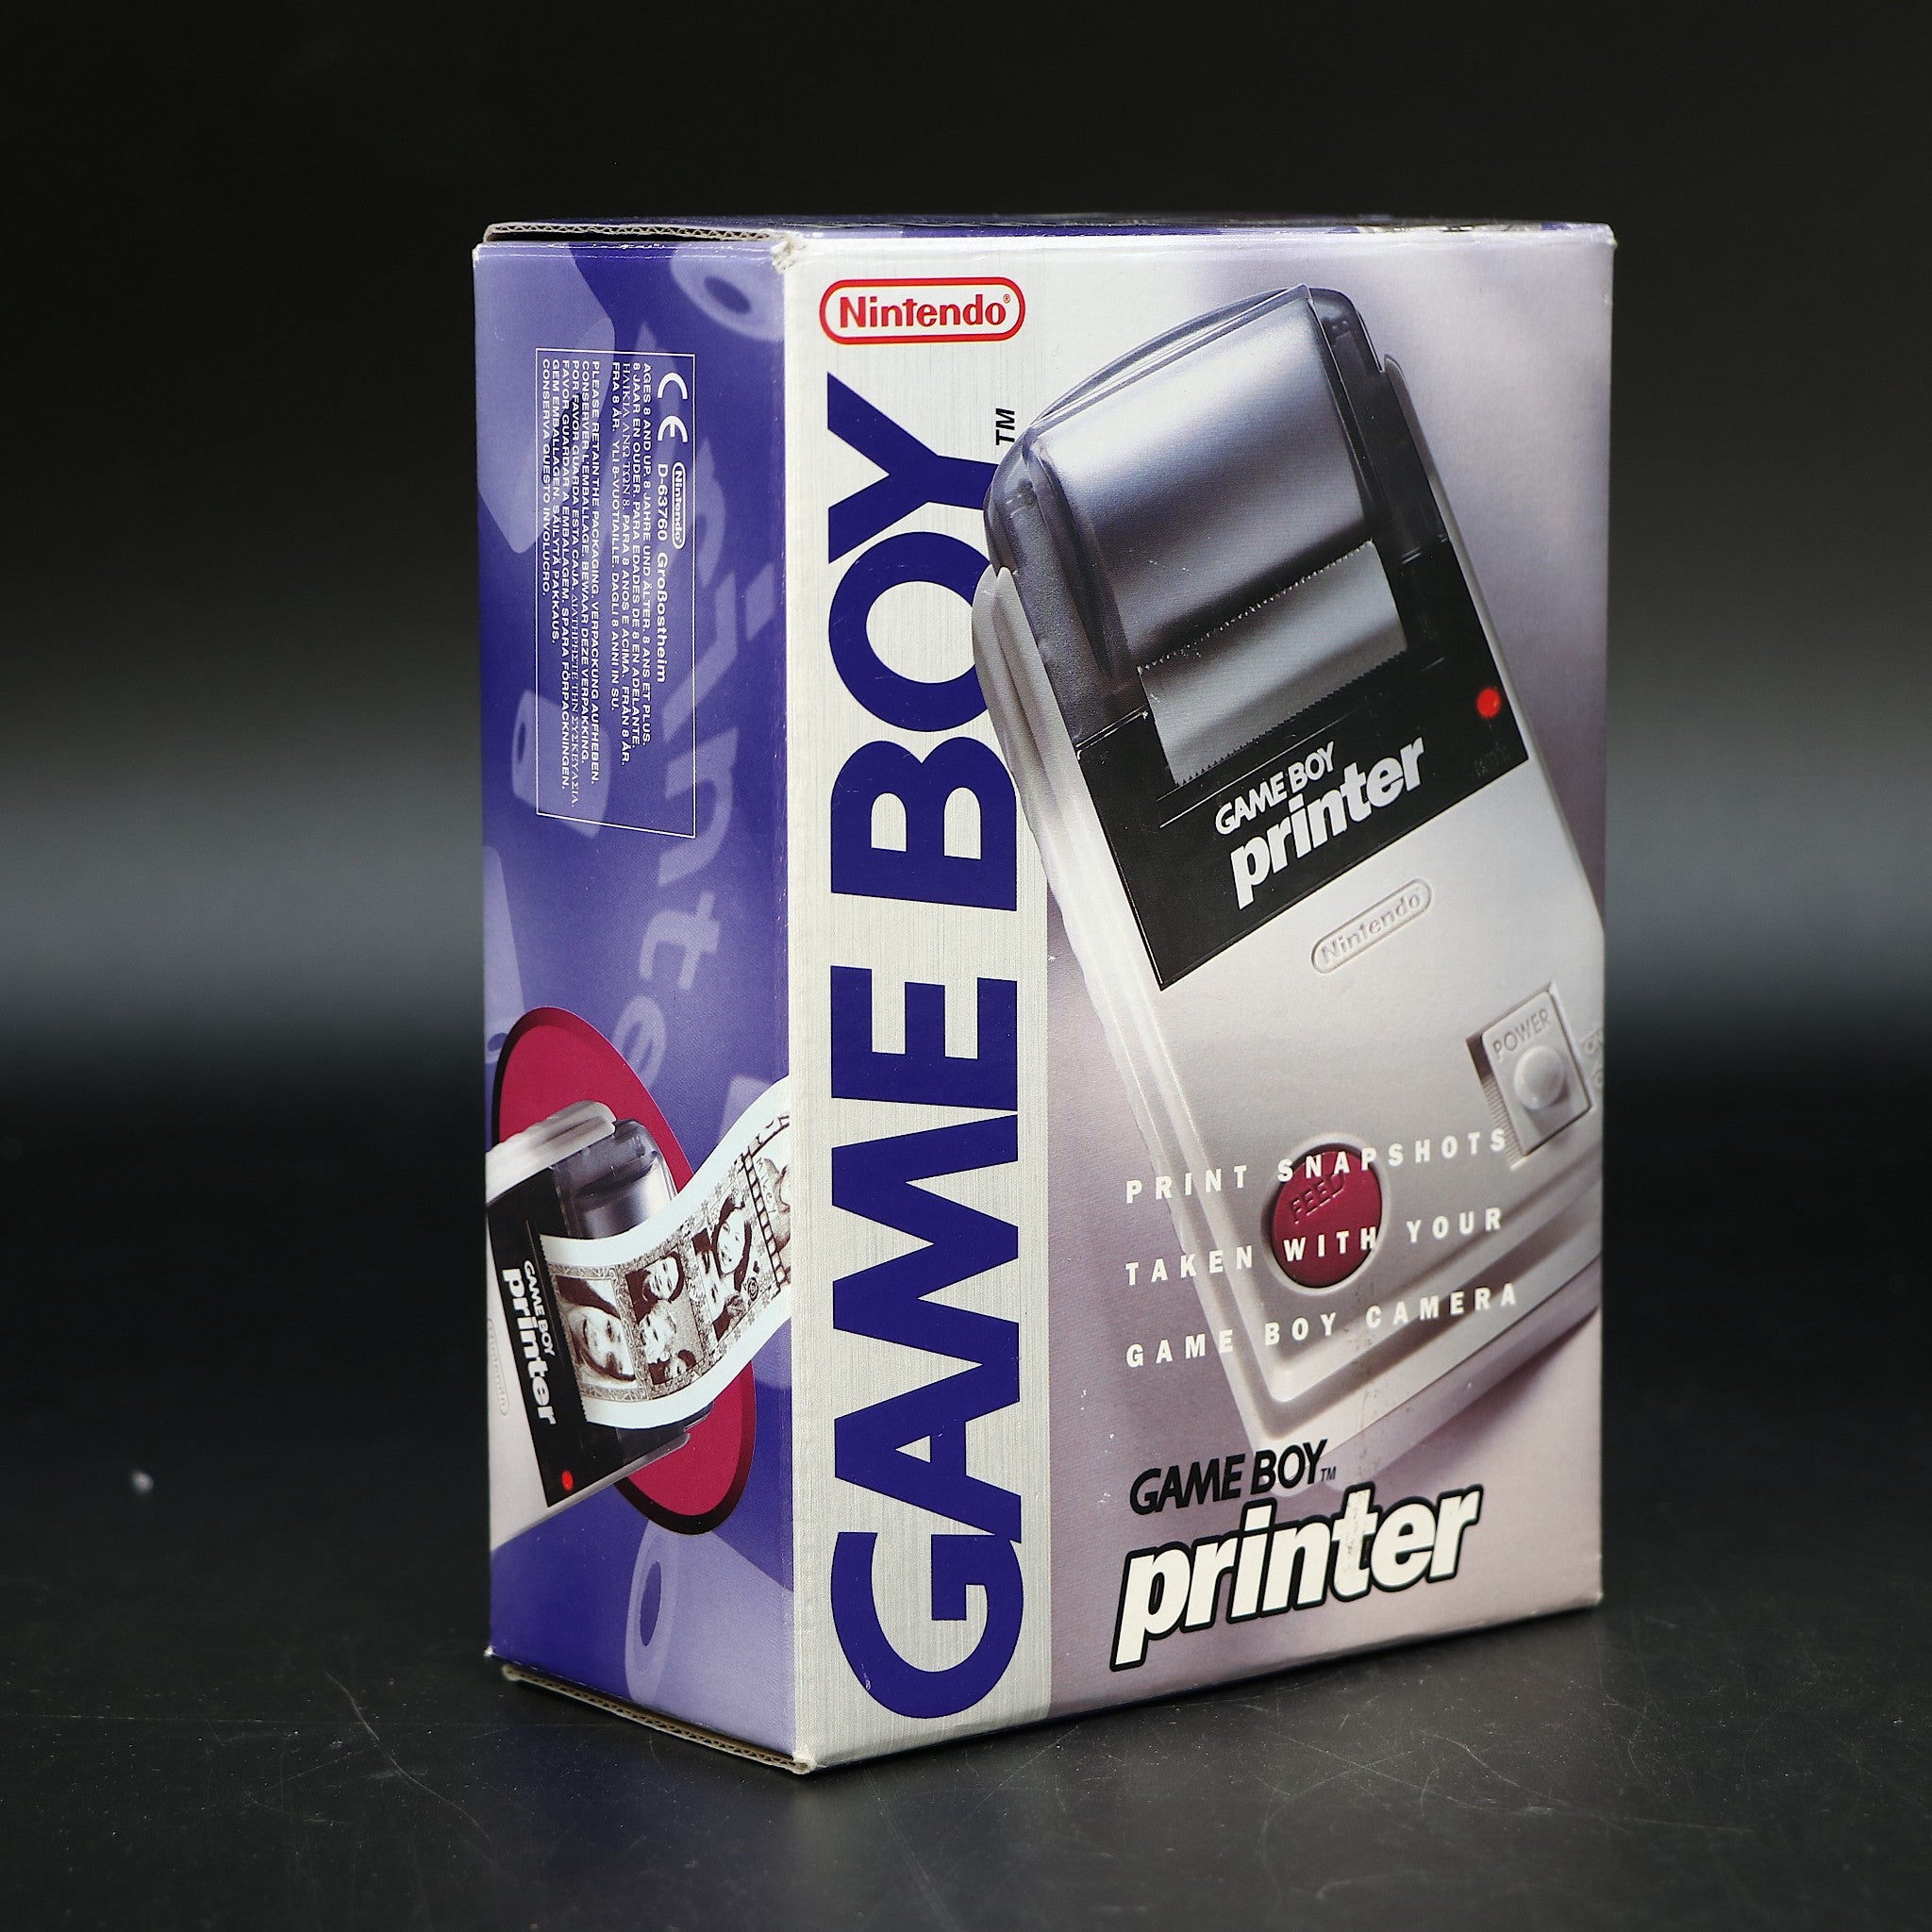 Official Nintendo Gameboy Original Printer | MGB-007 | CIB Collectable Condition